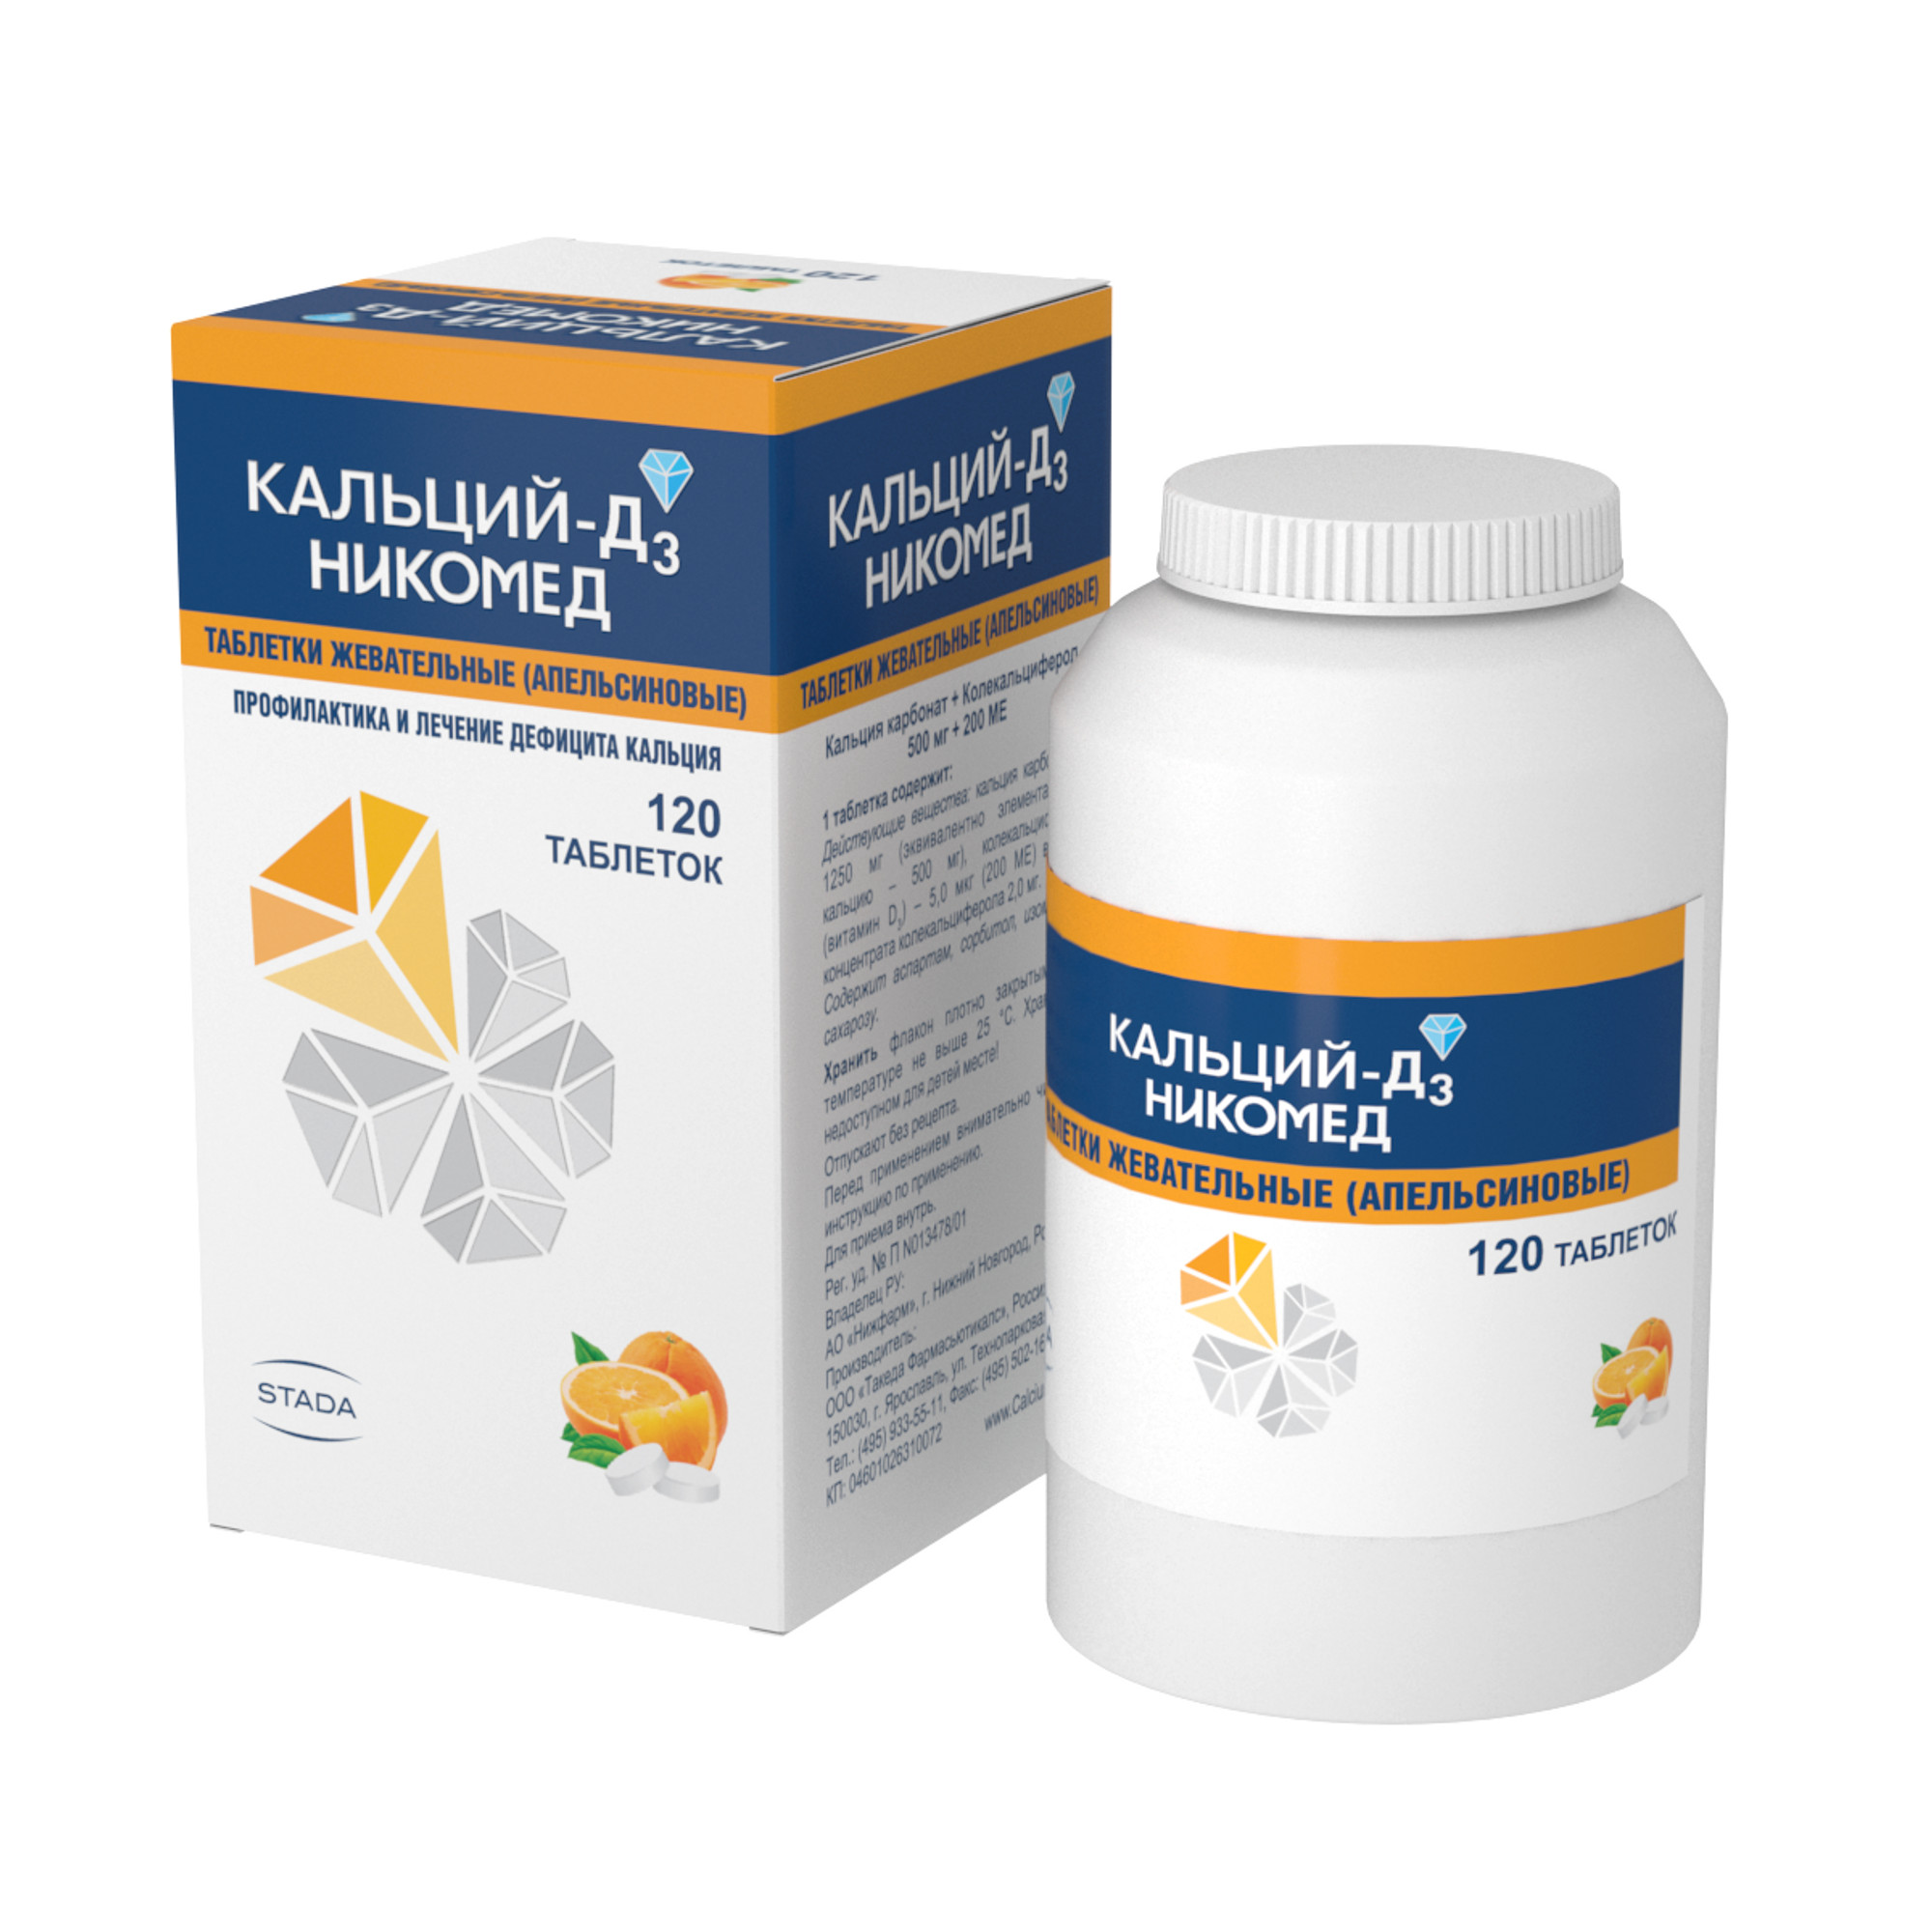 Кальций Д3-Никомед, таблетки жевательные (апельсин) 500 мг+200 МЕ, 120 шт. кальций д3 никомед таблетки жевательные 120 шт мята